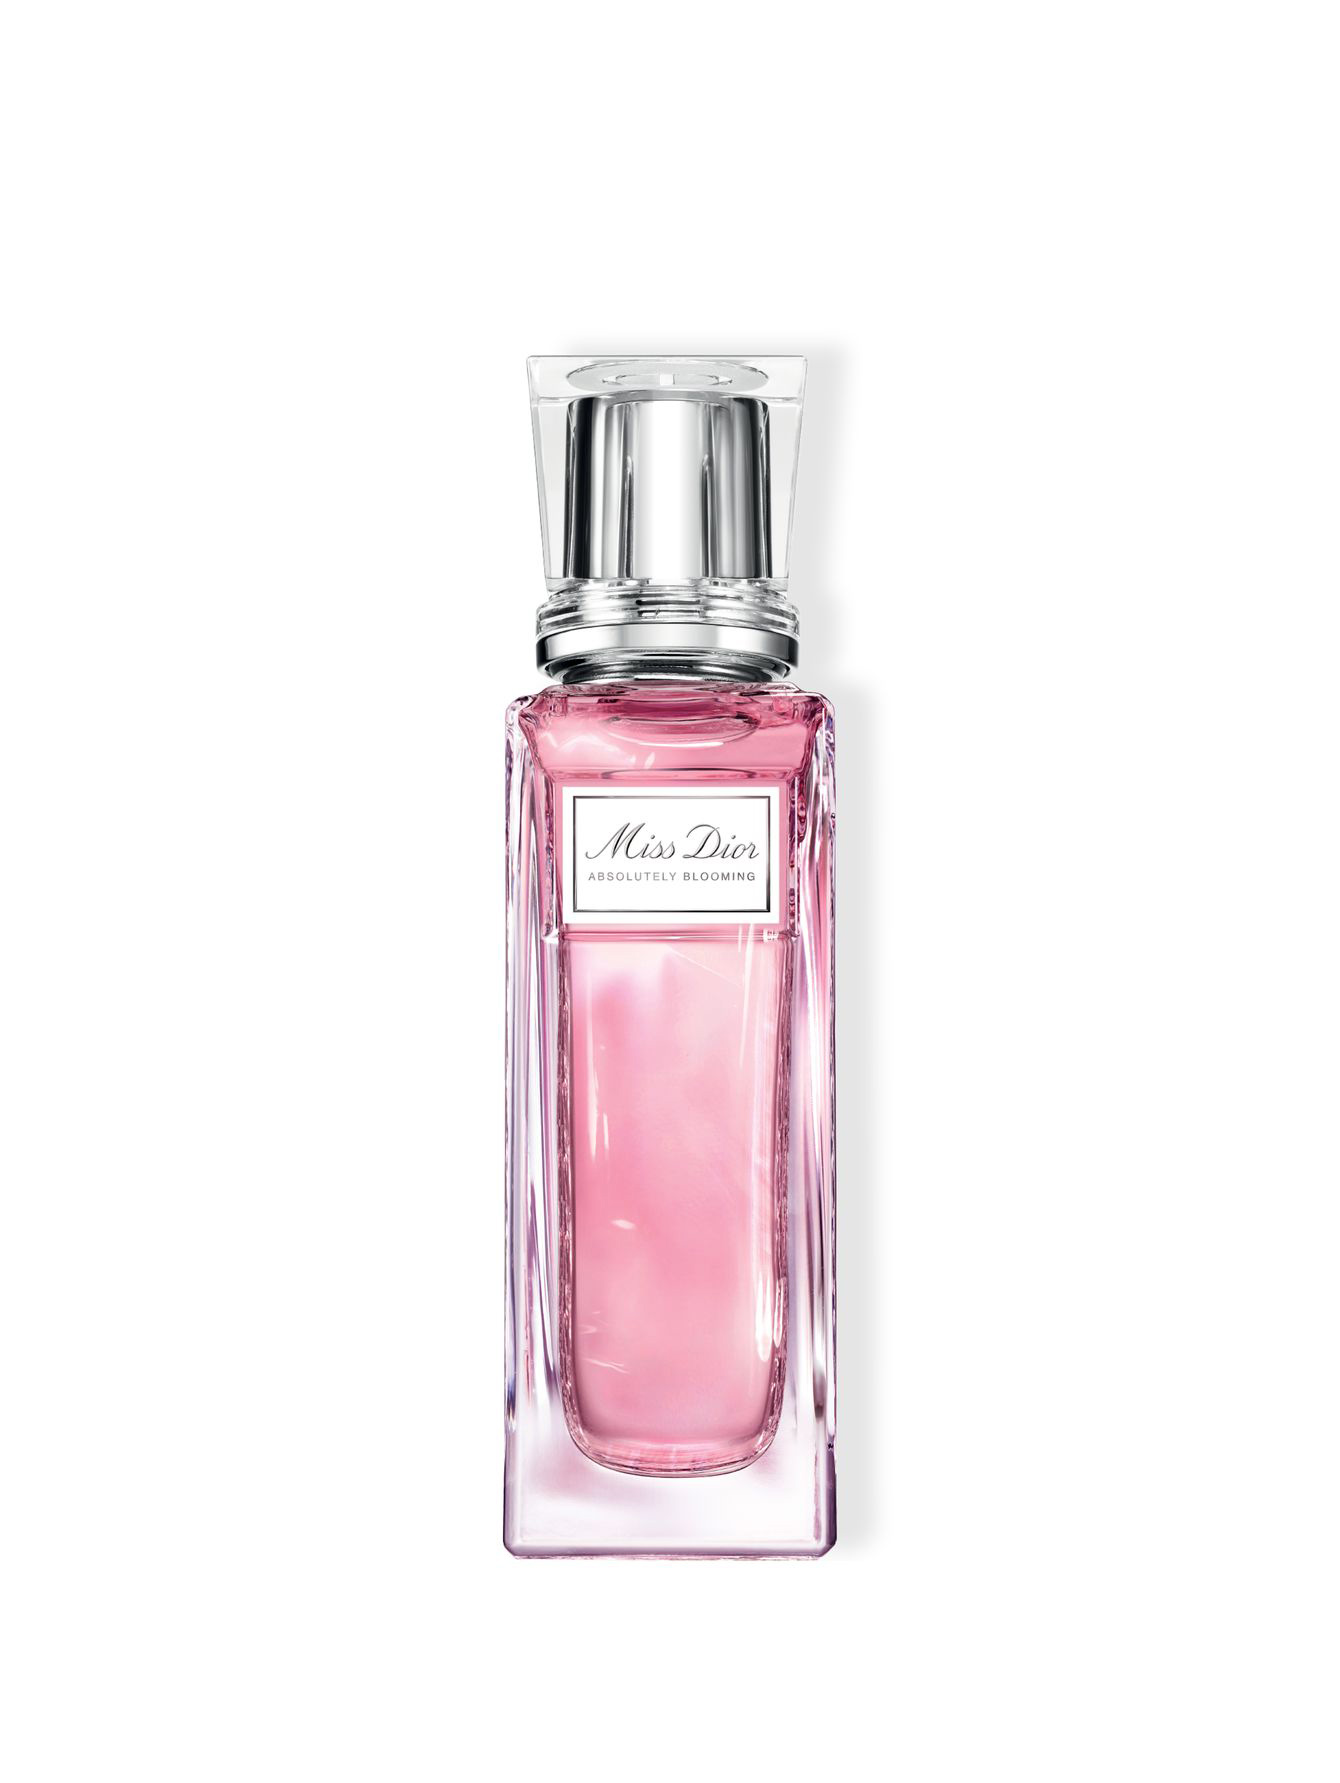 Miss Dior Absolutely Blooming Парфюмерная вода с роликовым аппликатором 20 мл - Общий вид